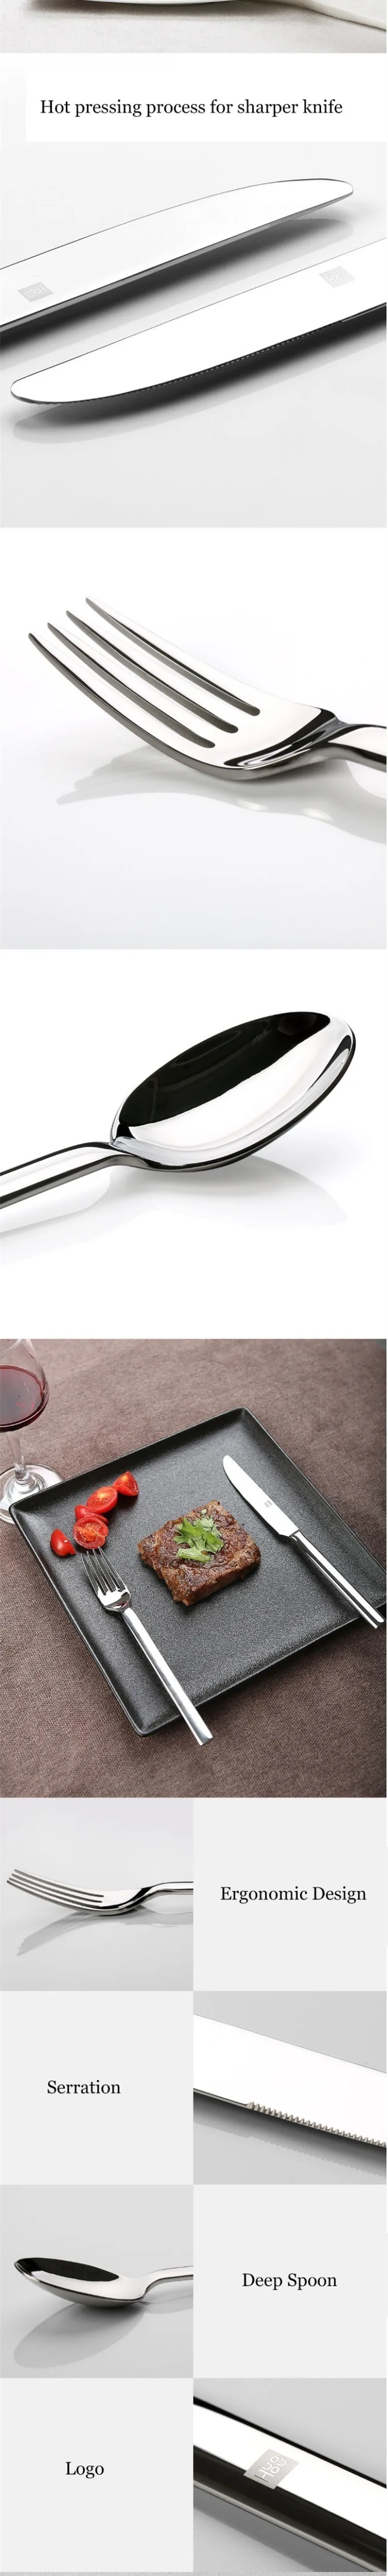 Оригинальный набор столовых приборов Xiaomi Mijia Huohou, ножи для стейка, ложка, вилка из нержавеющей стали, набор посуды, столовые, бытовые